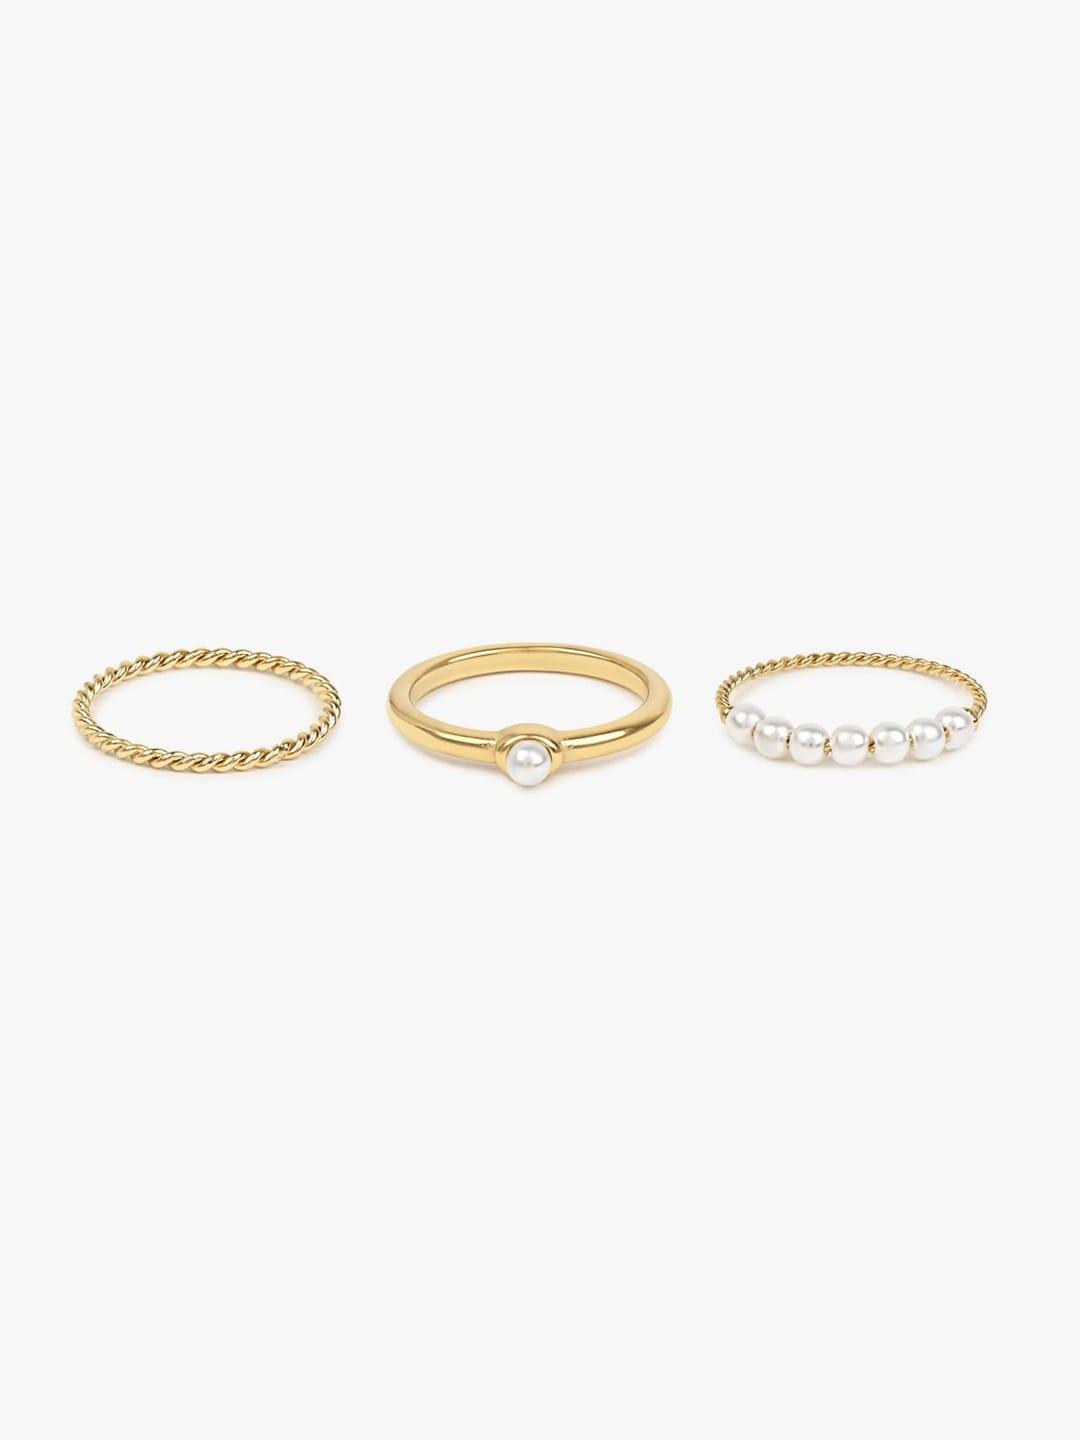 aldo-set-of-3-gold-plated-bedded-finger-rings